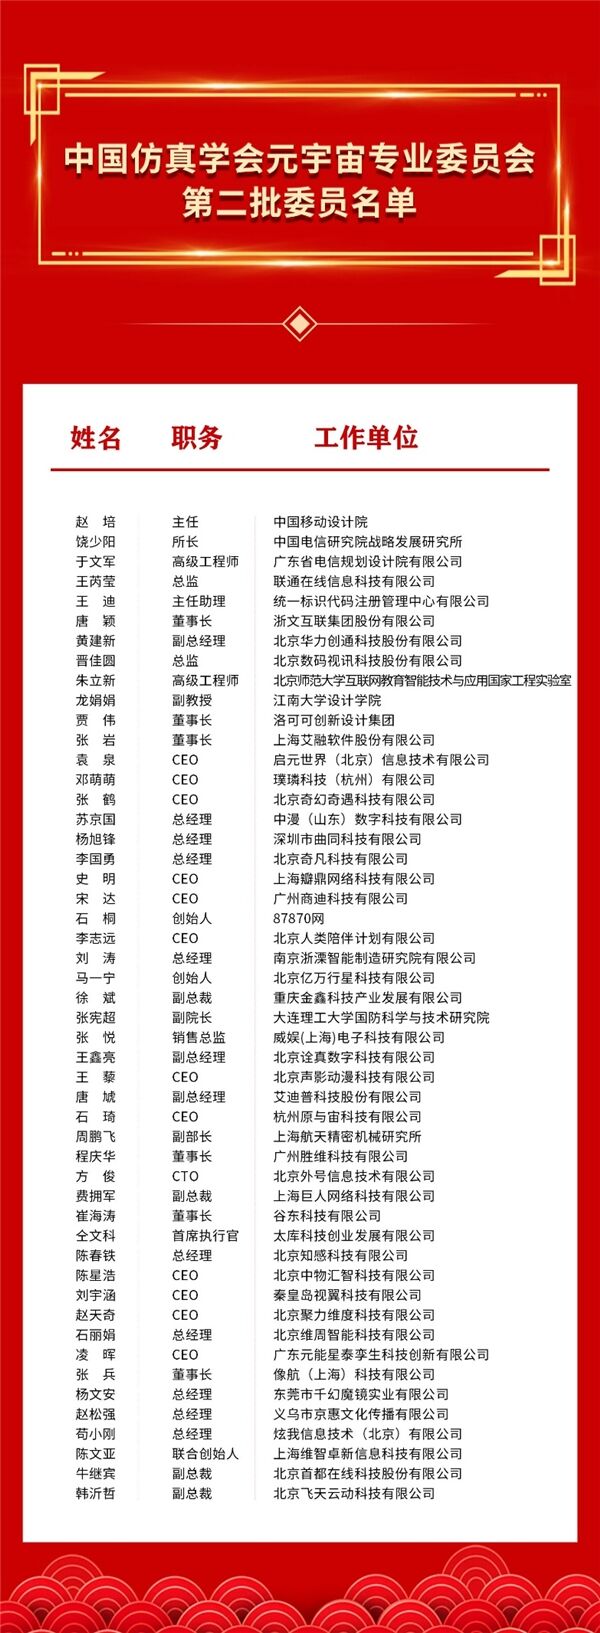 中国仿真学会元宇宙专业委员会第二批委员和单位正式公布!